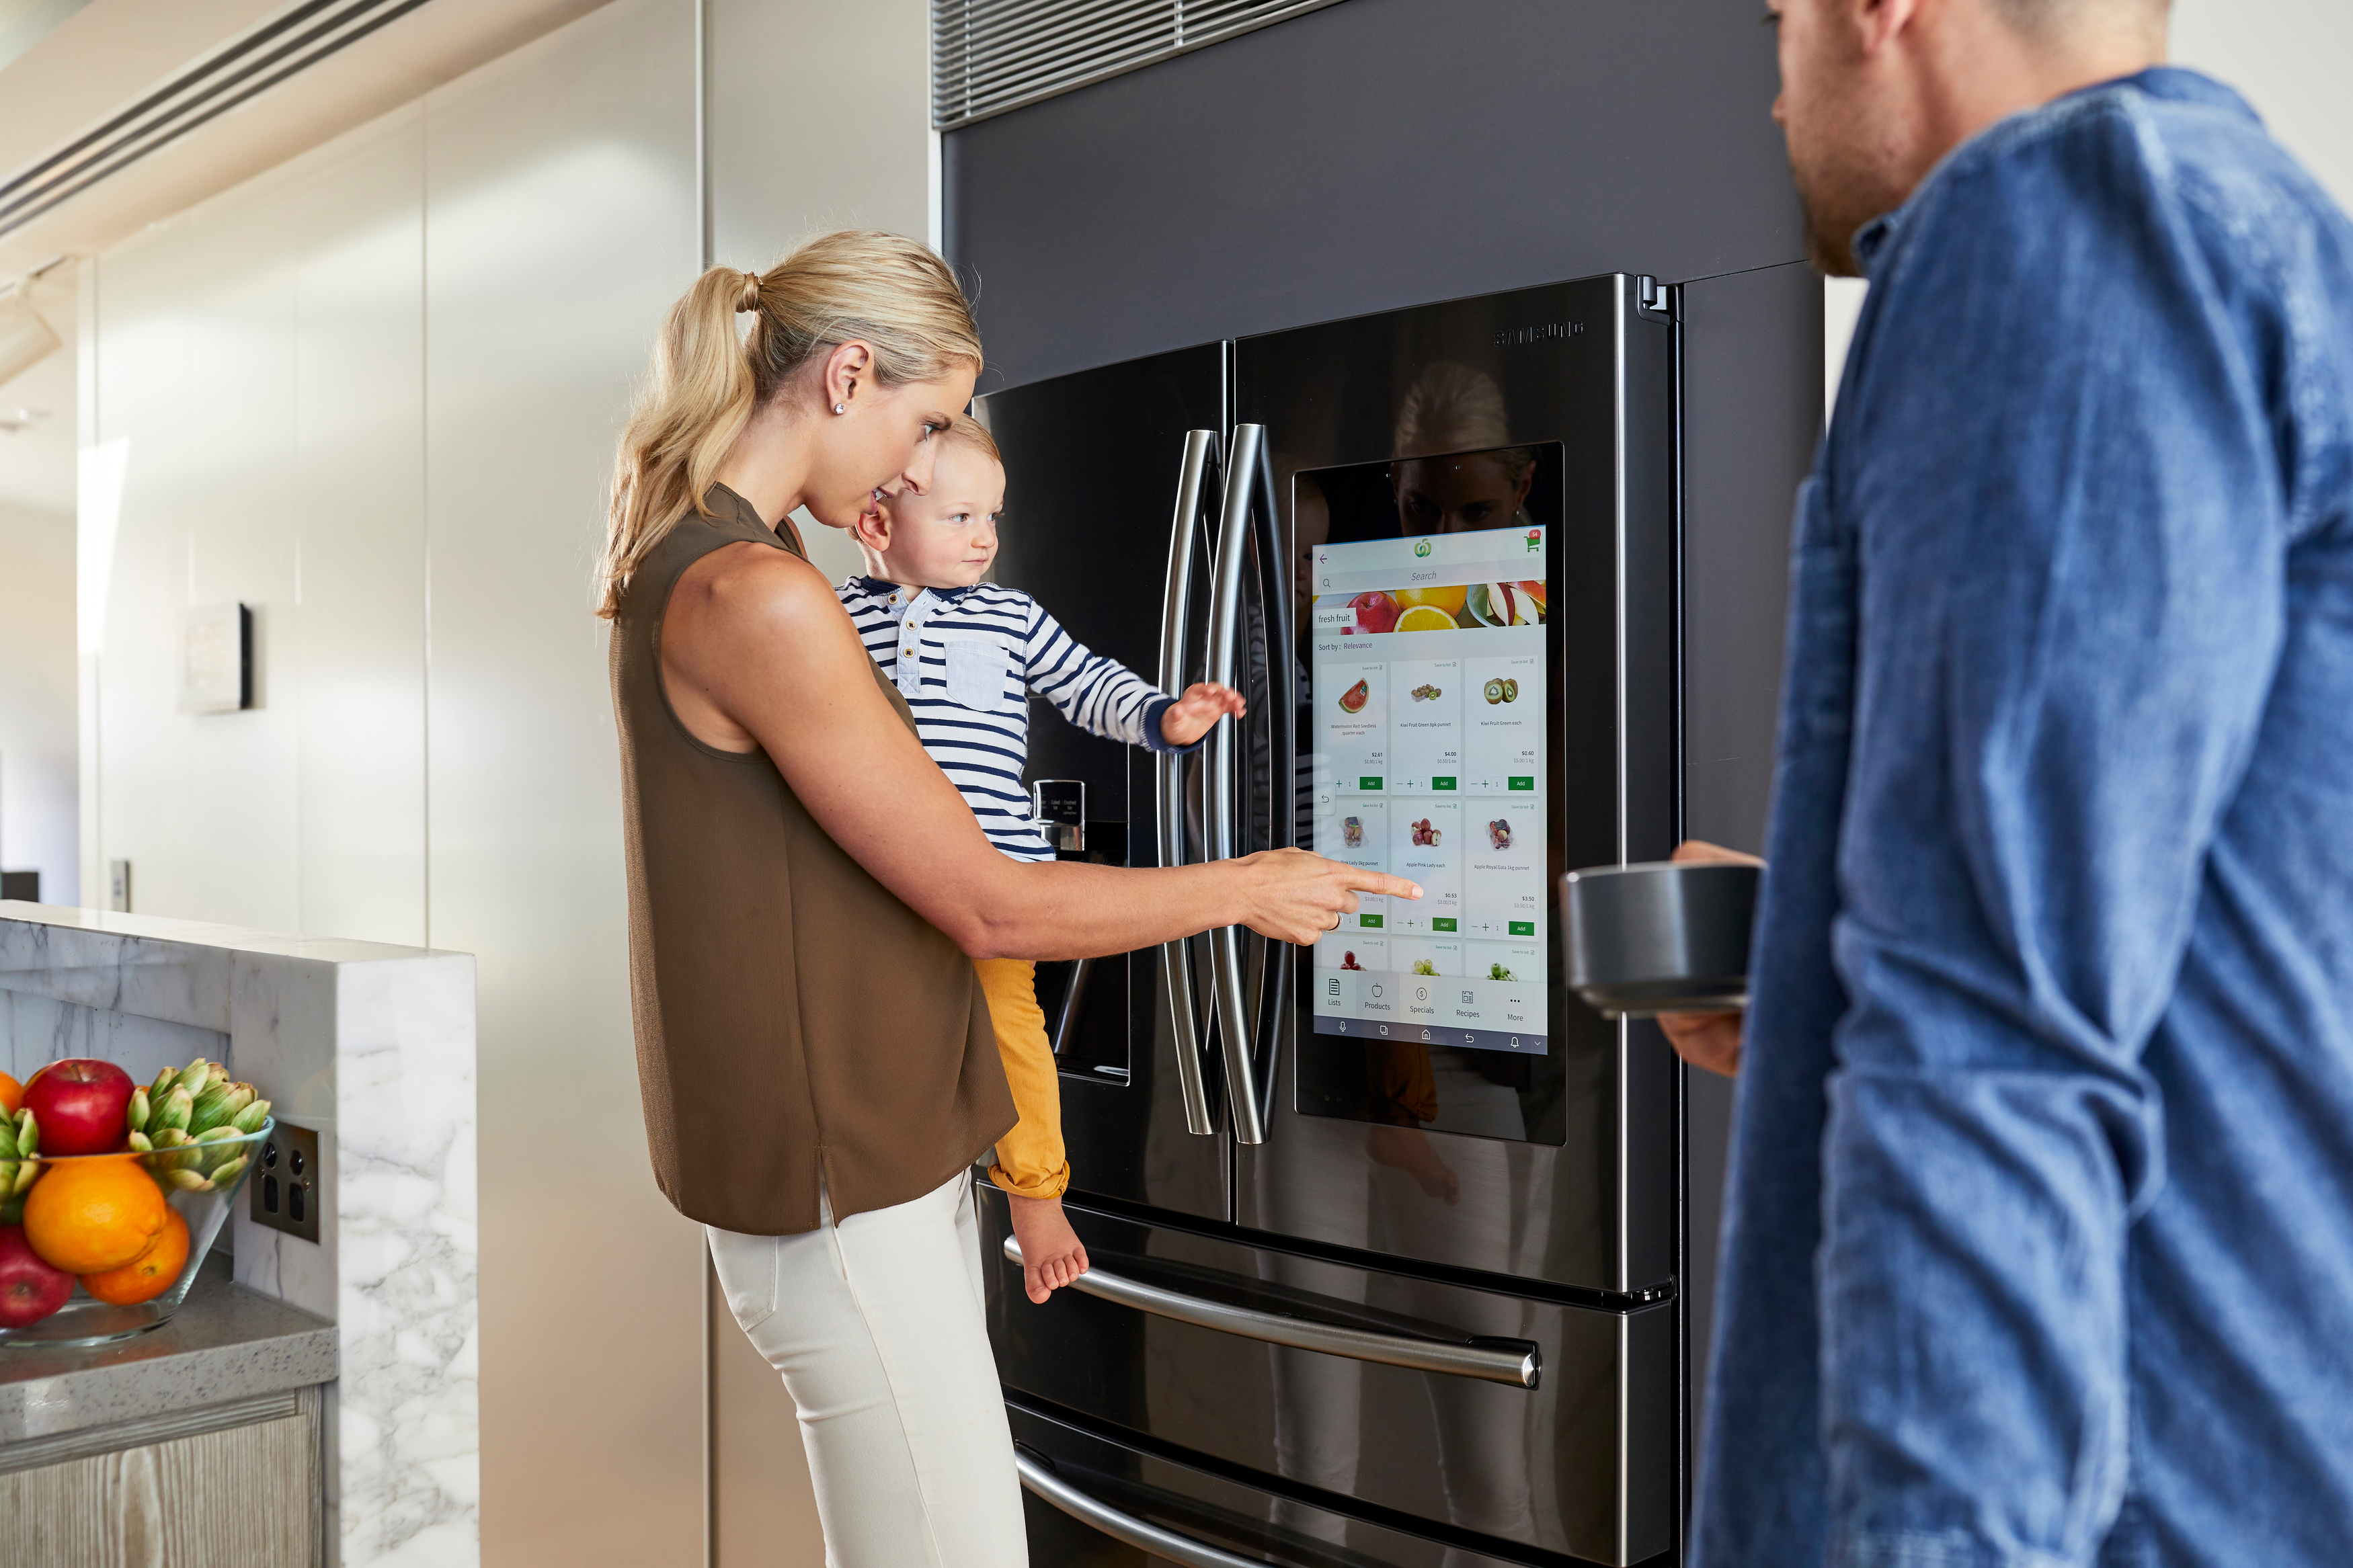 Холодильник после покупки. Samsung Family Hub холодильник. Холодильник с телевизором. Мастер холодильников. Интерактивный холодильник.